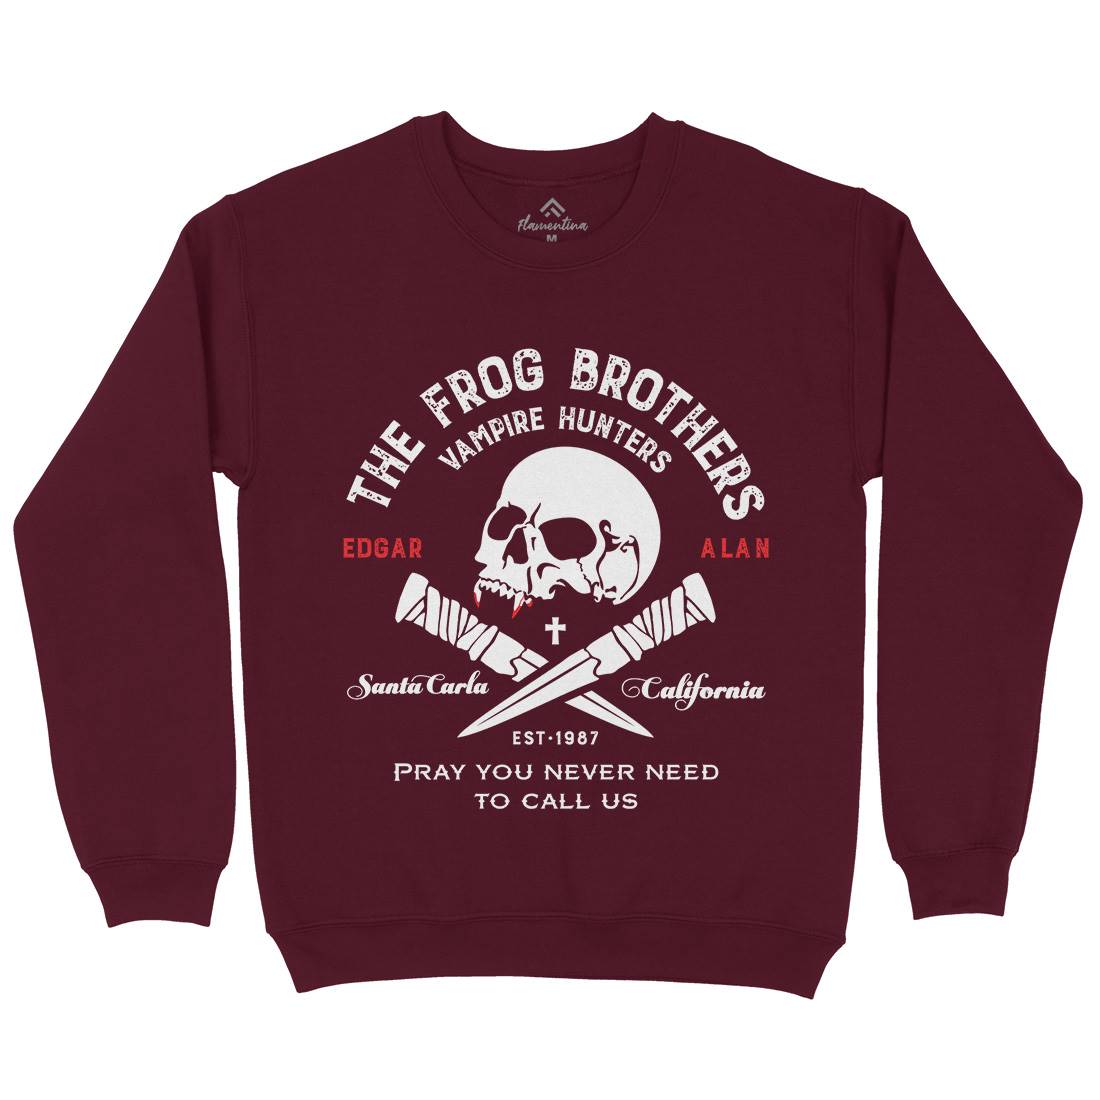 Frog Brothers Kids Crew Neck Sweatshirt Horror D261